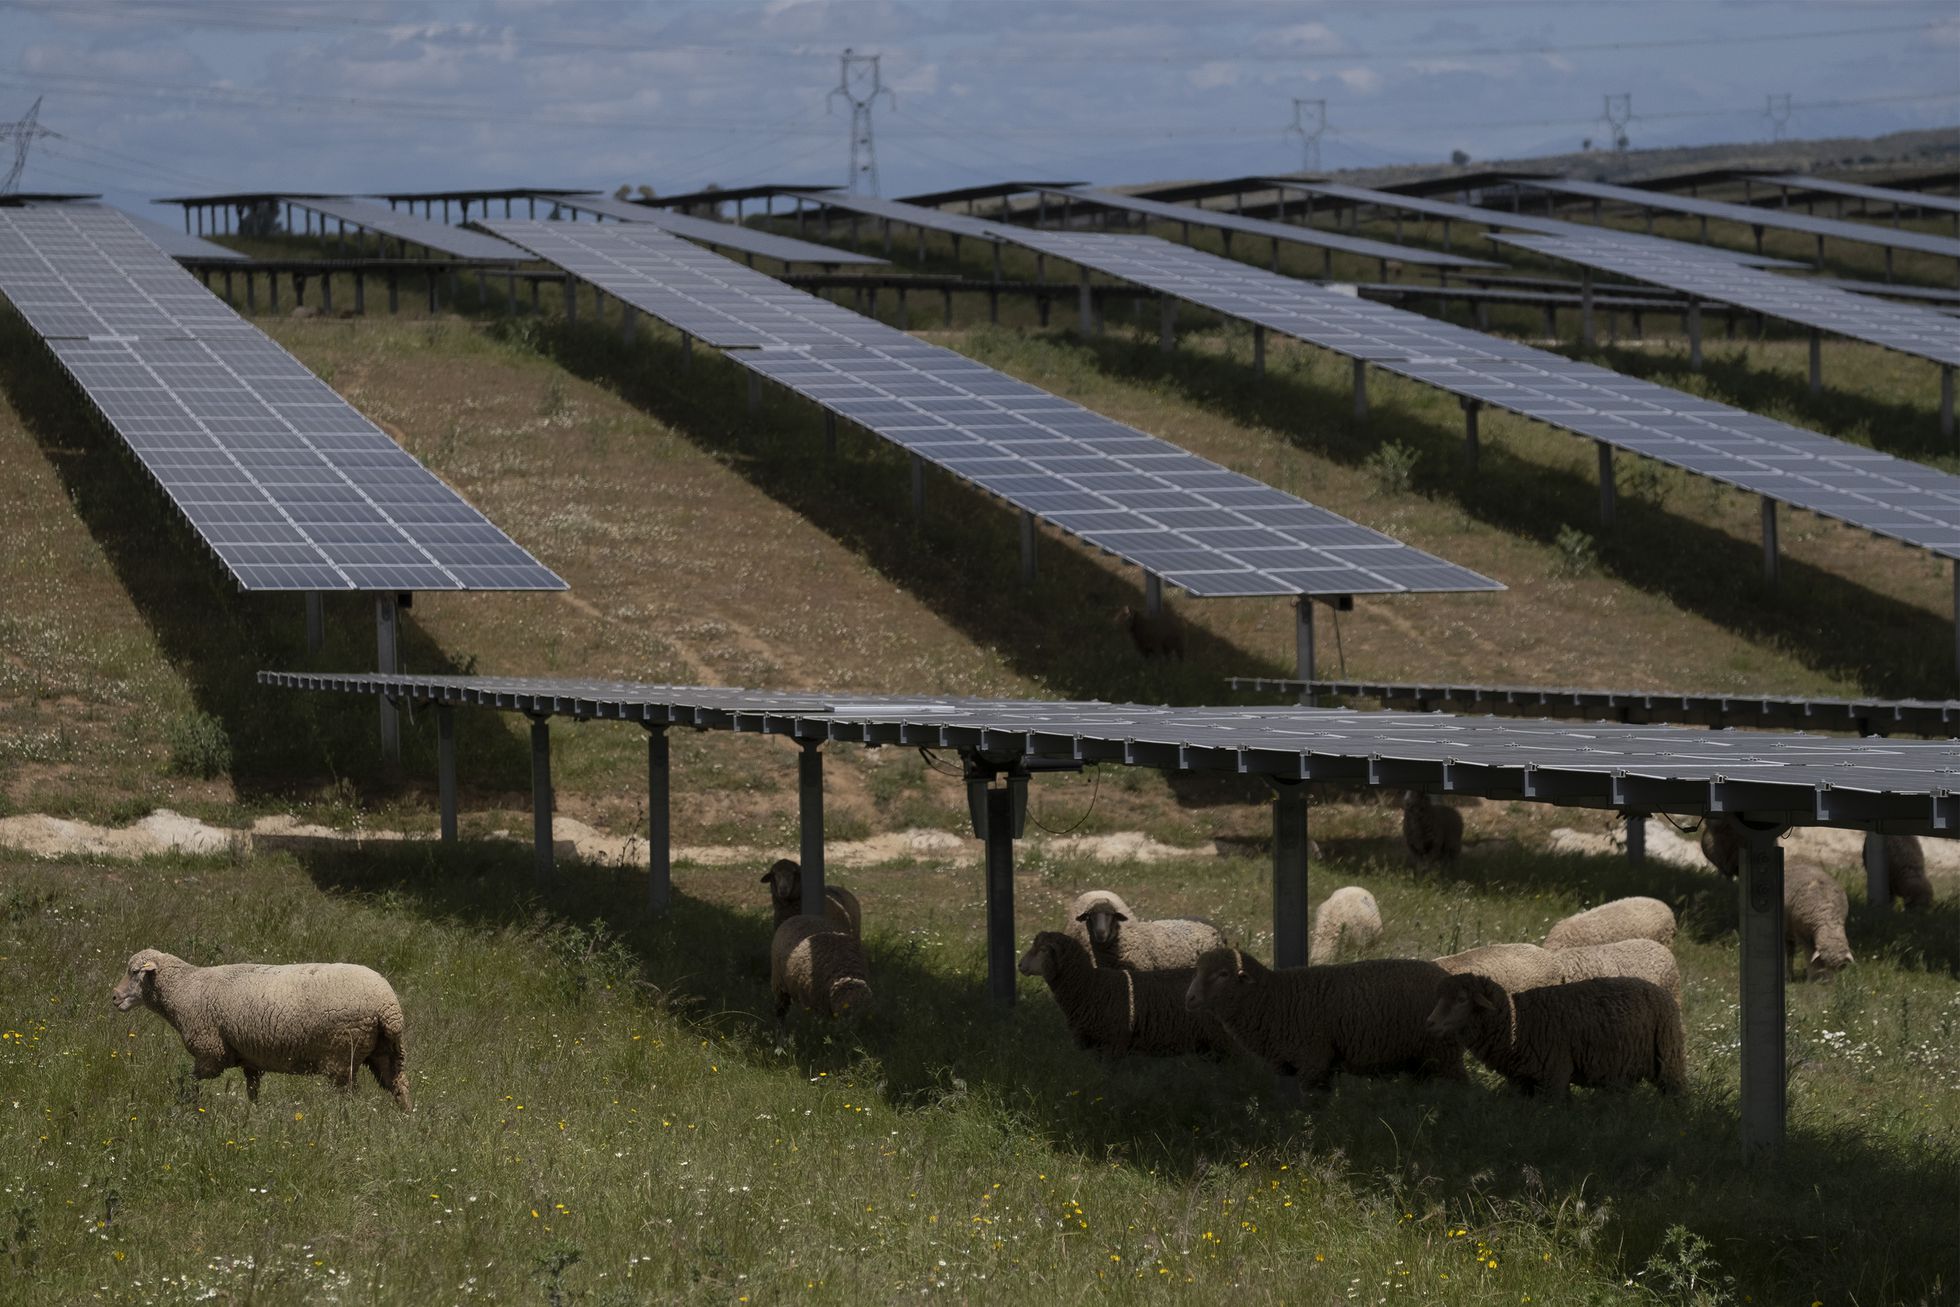 Un rebaño de ovejas en la planta fotovoltaica de Trujillo, Cáceres.
